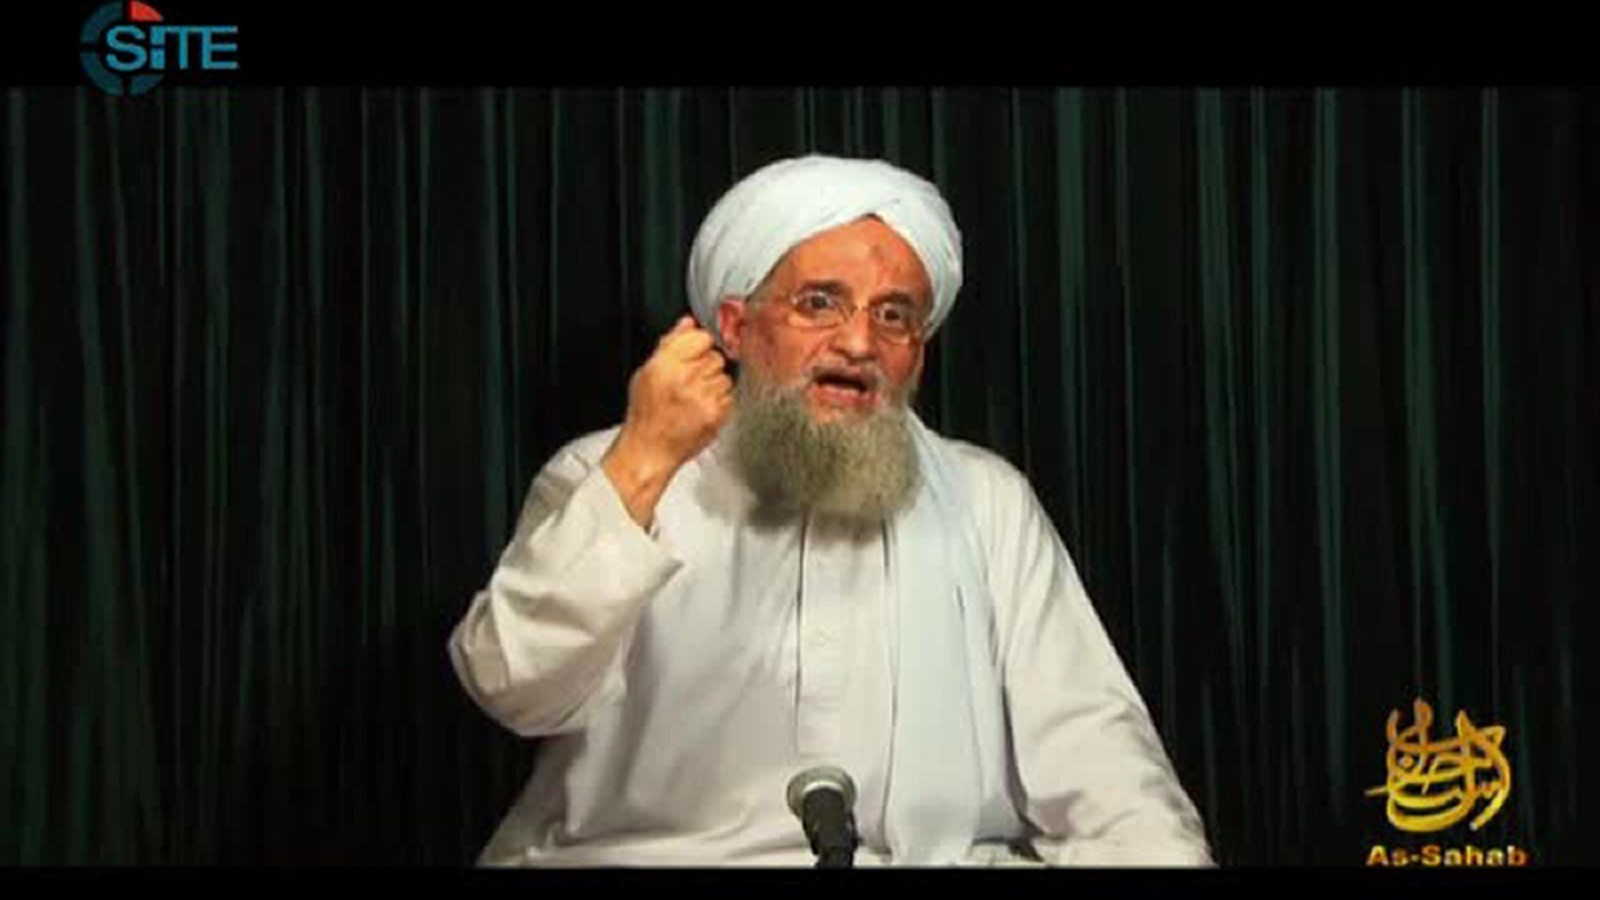 Ayman al-Zawahiri Fast Facts